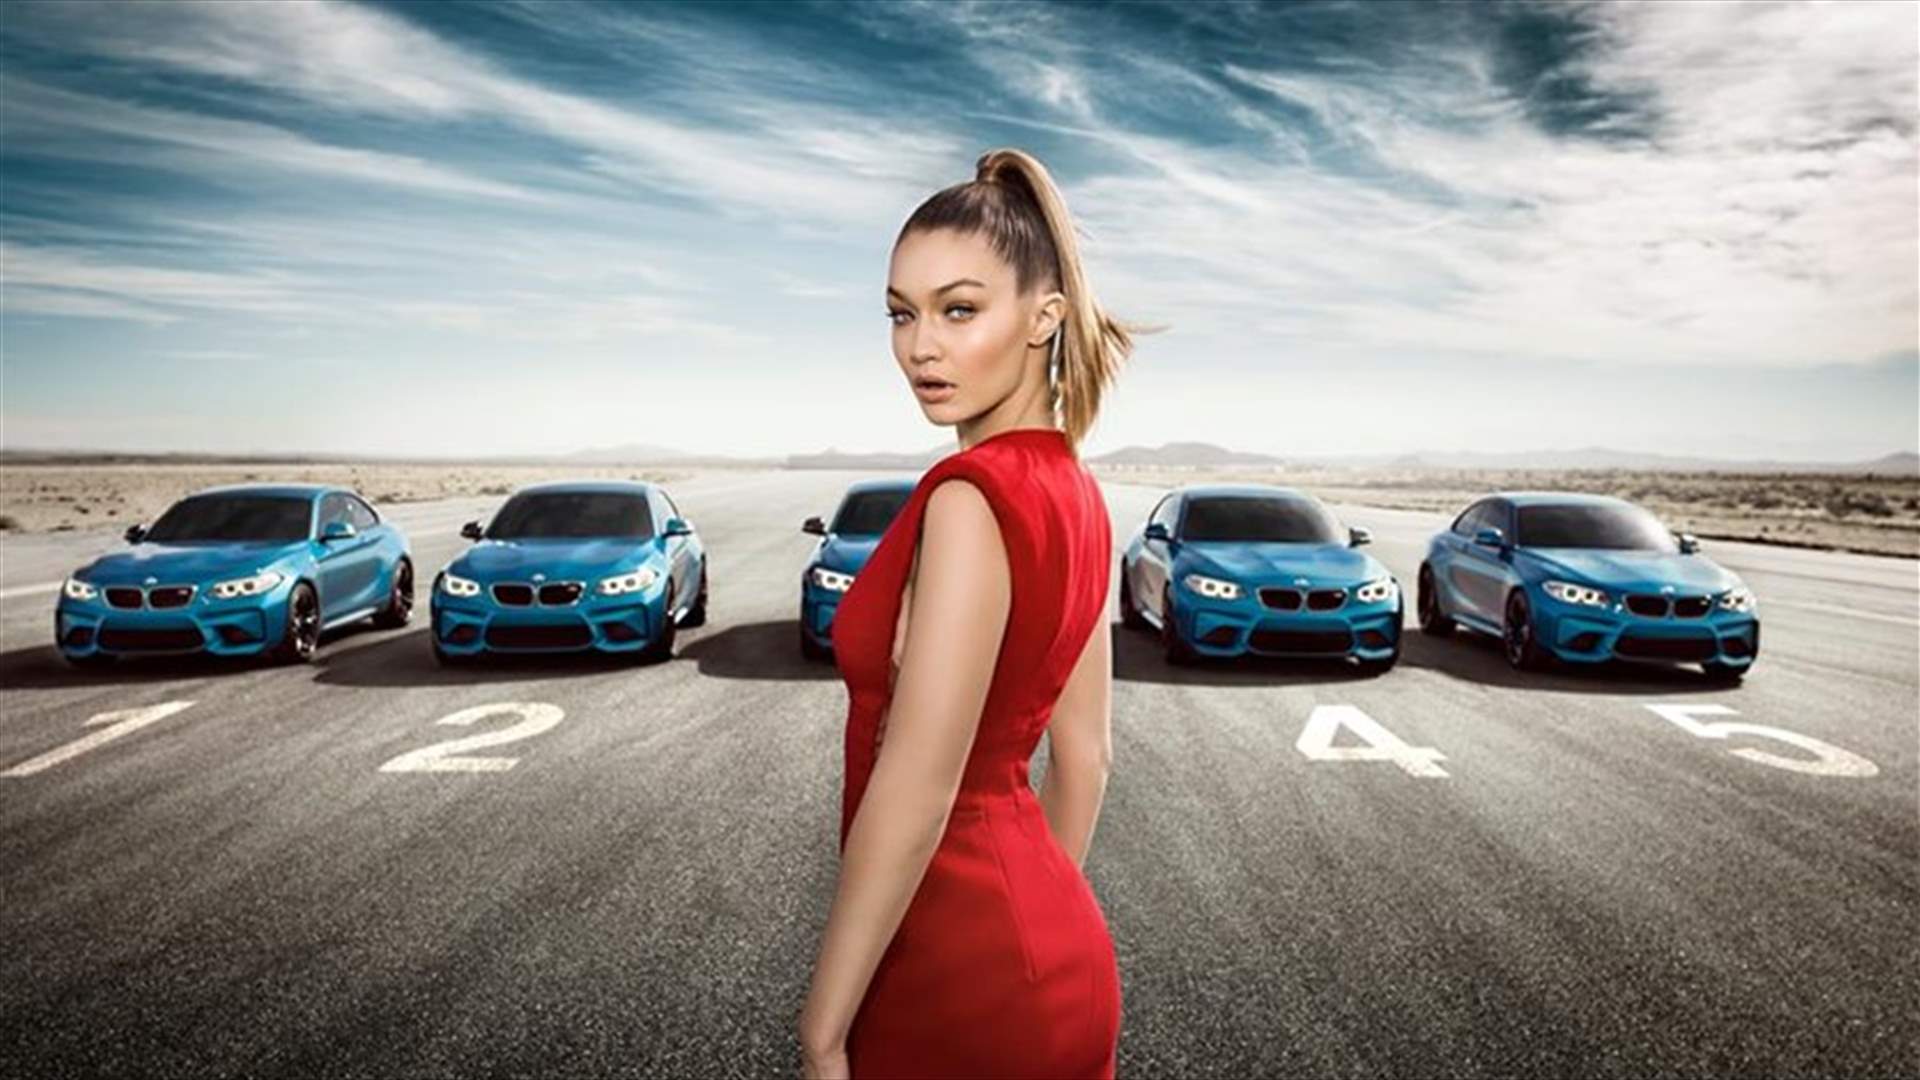 بالفيديو: جيجي في قمّة الإثارة للترويج لسيّارة BMW الجديدة